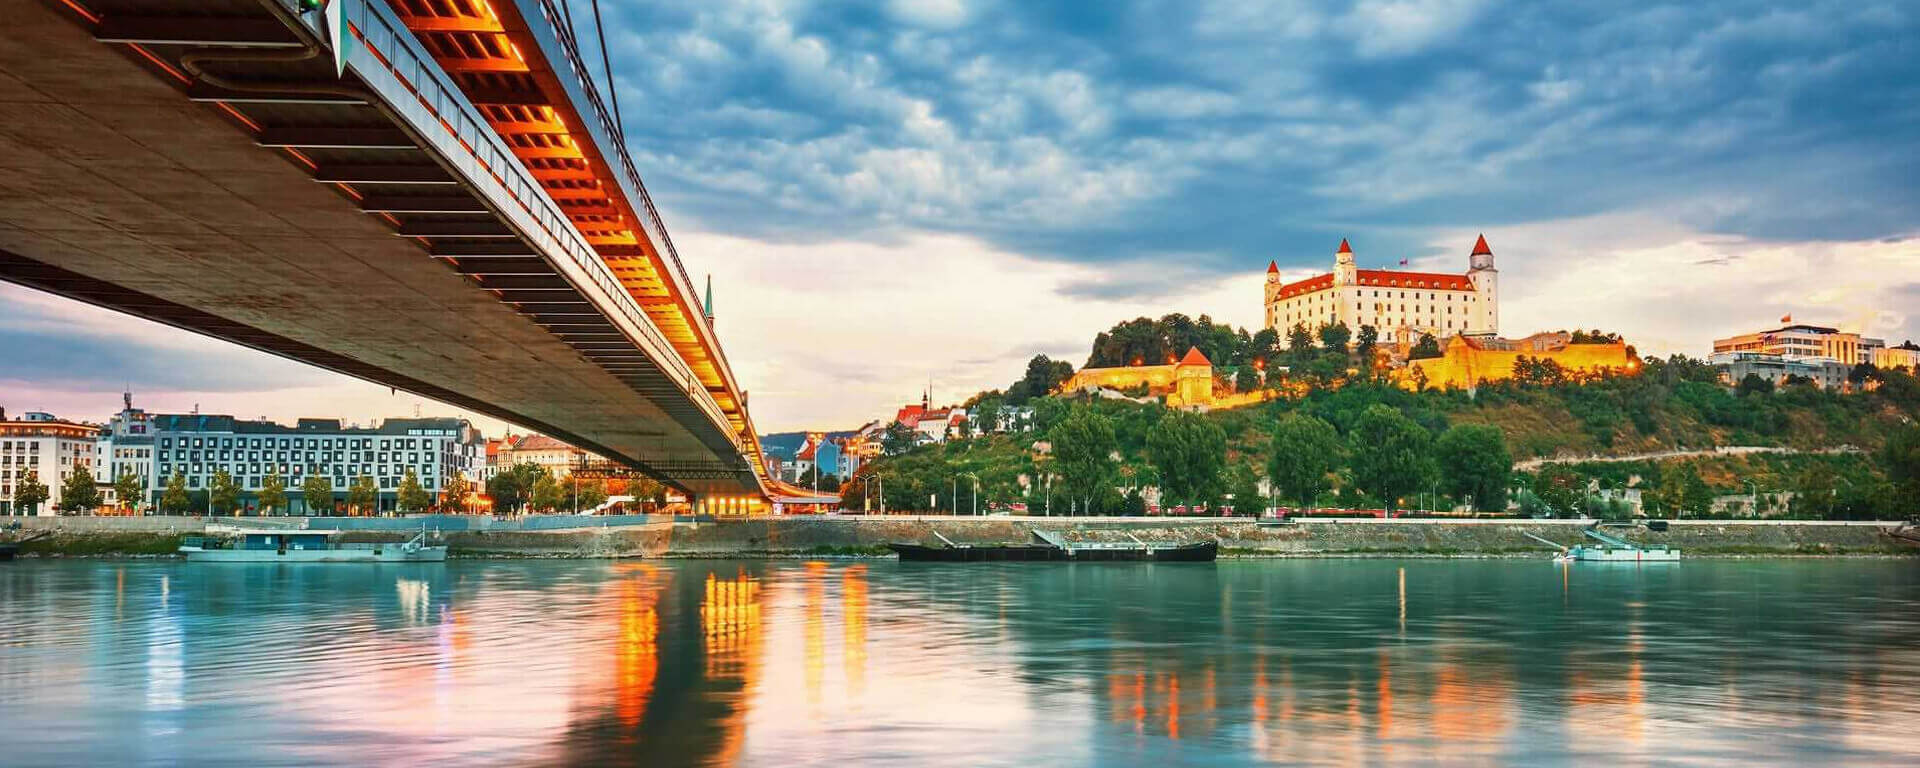 Bratislava Tour Packages